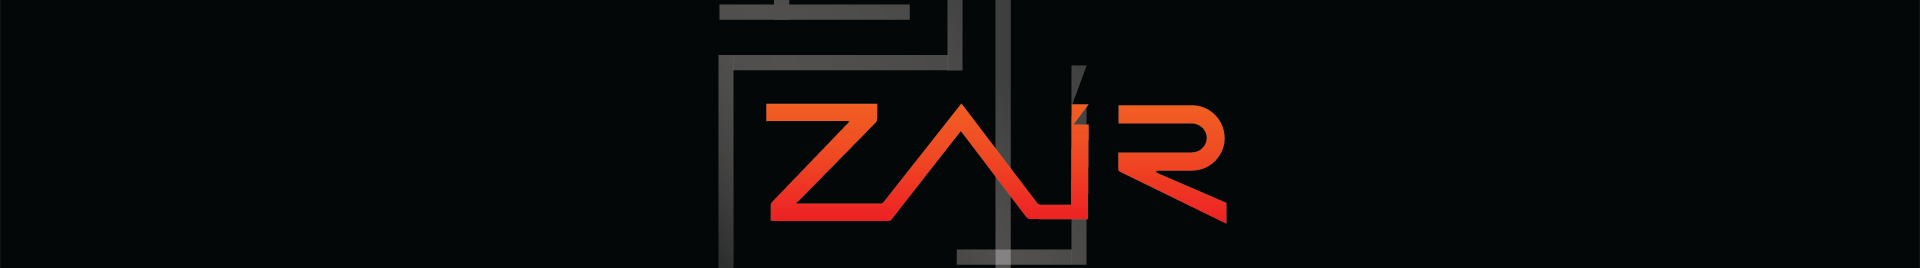 Zair Raza's profile banner